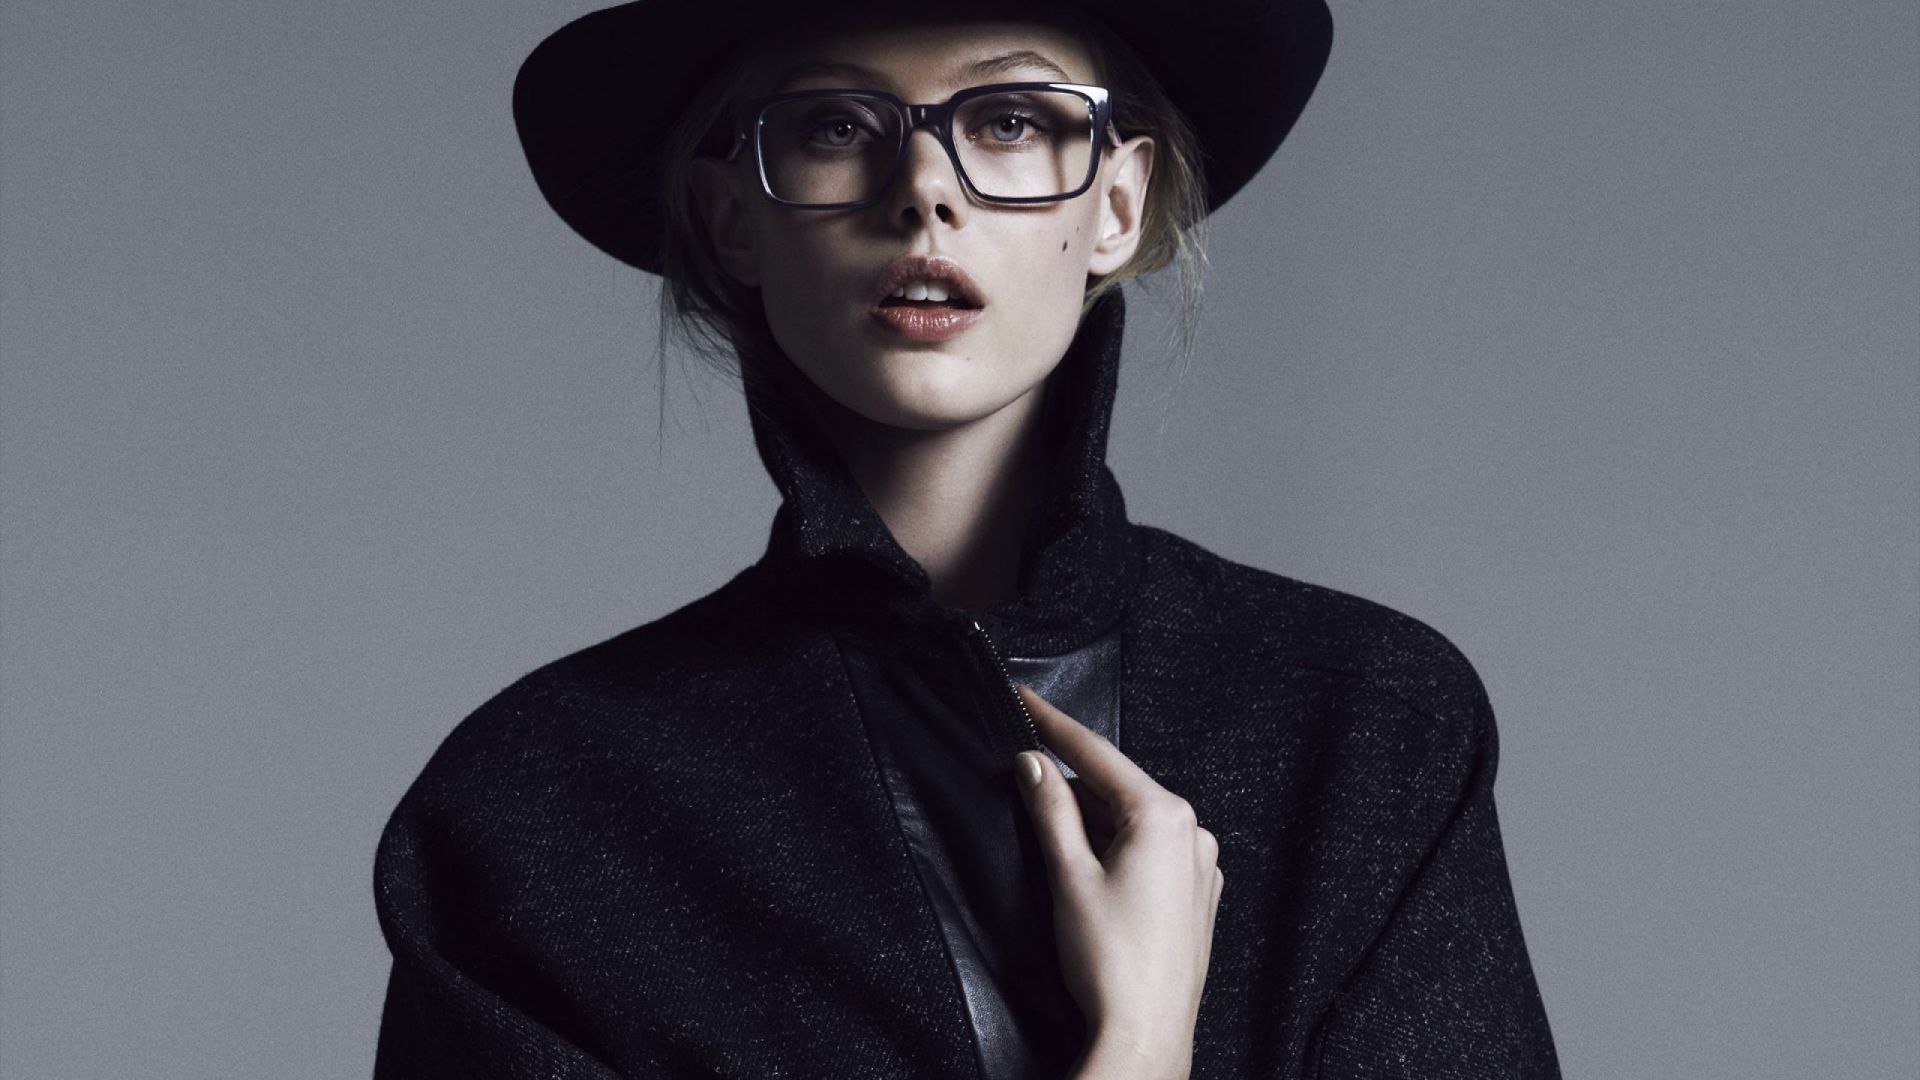 Wallpaper Frida Gustavsson, blonde, model, glasses, hat